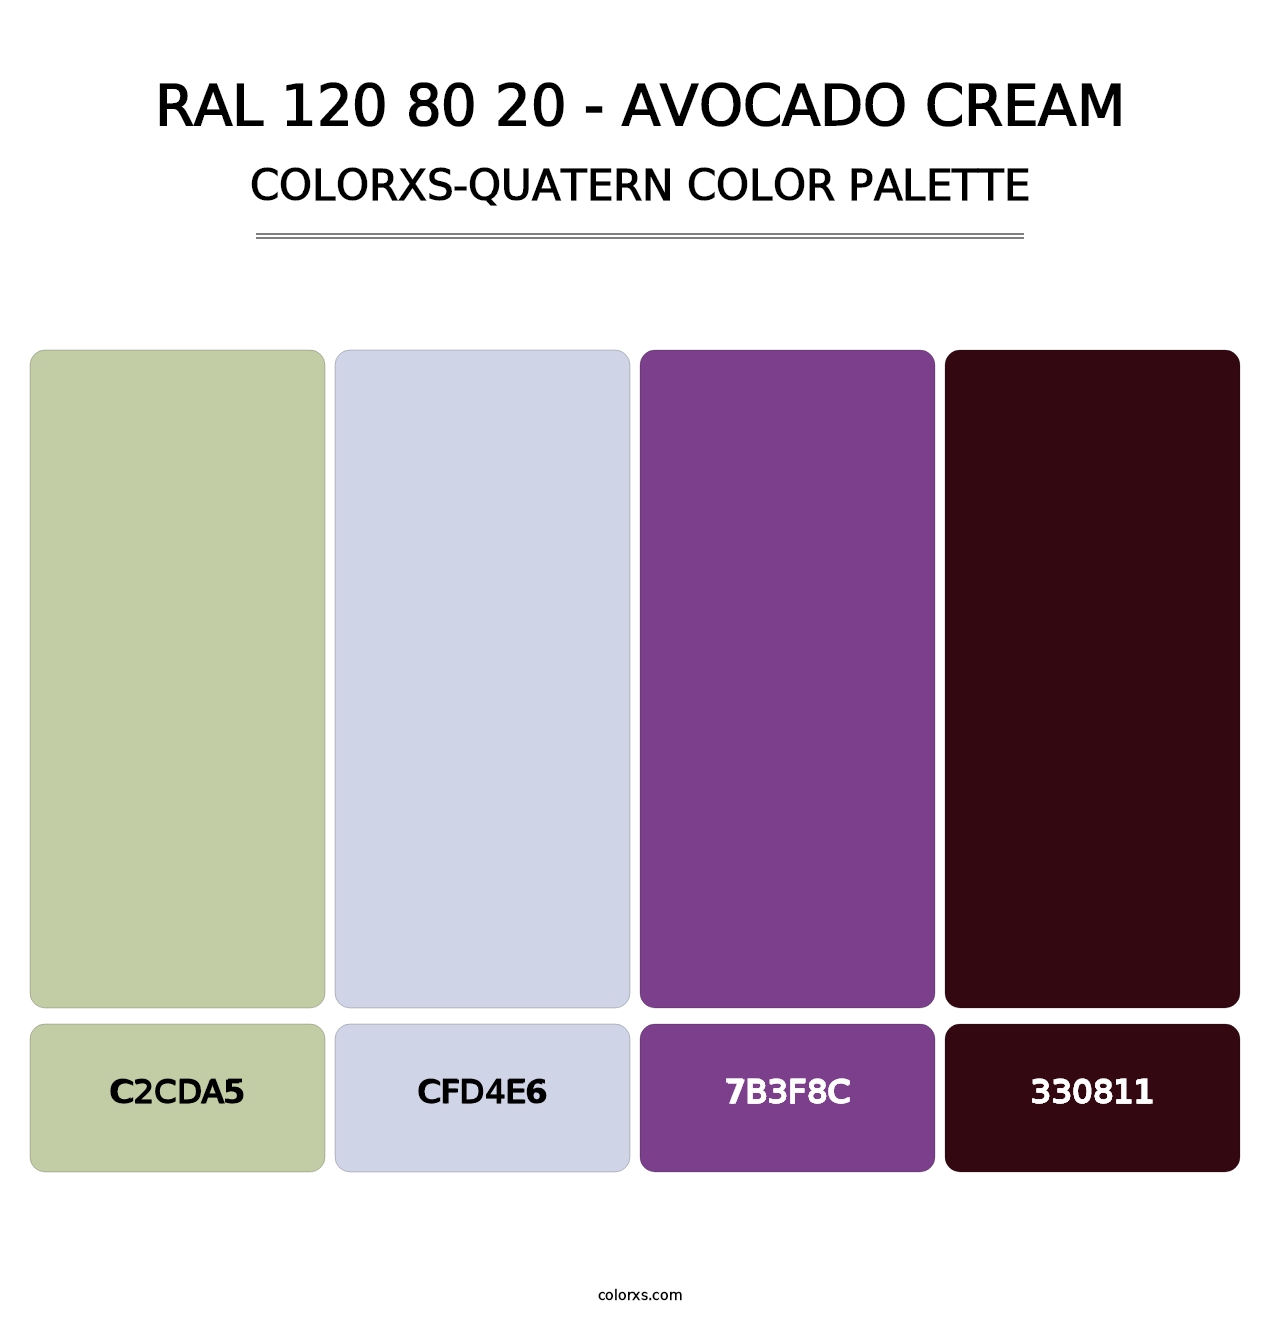 RAL 120 80 20 - Avocado Cream - Colorxs Quatern Palette